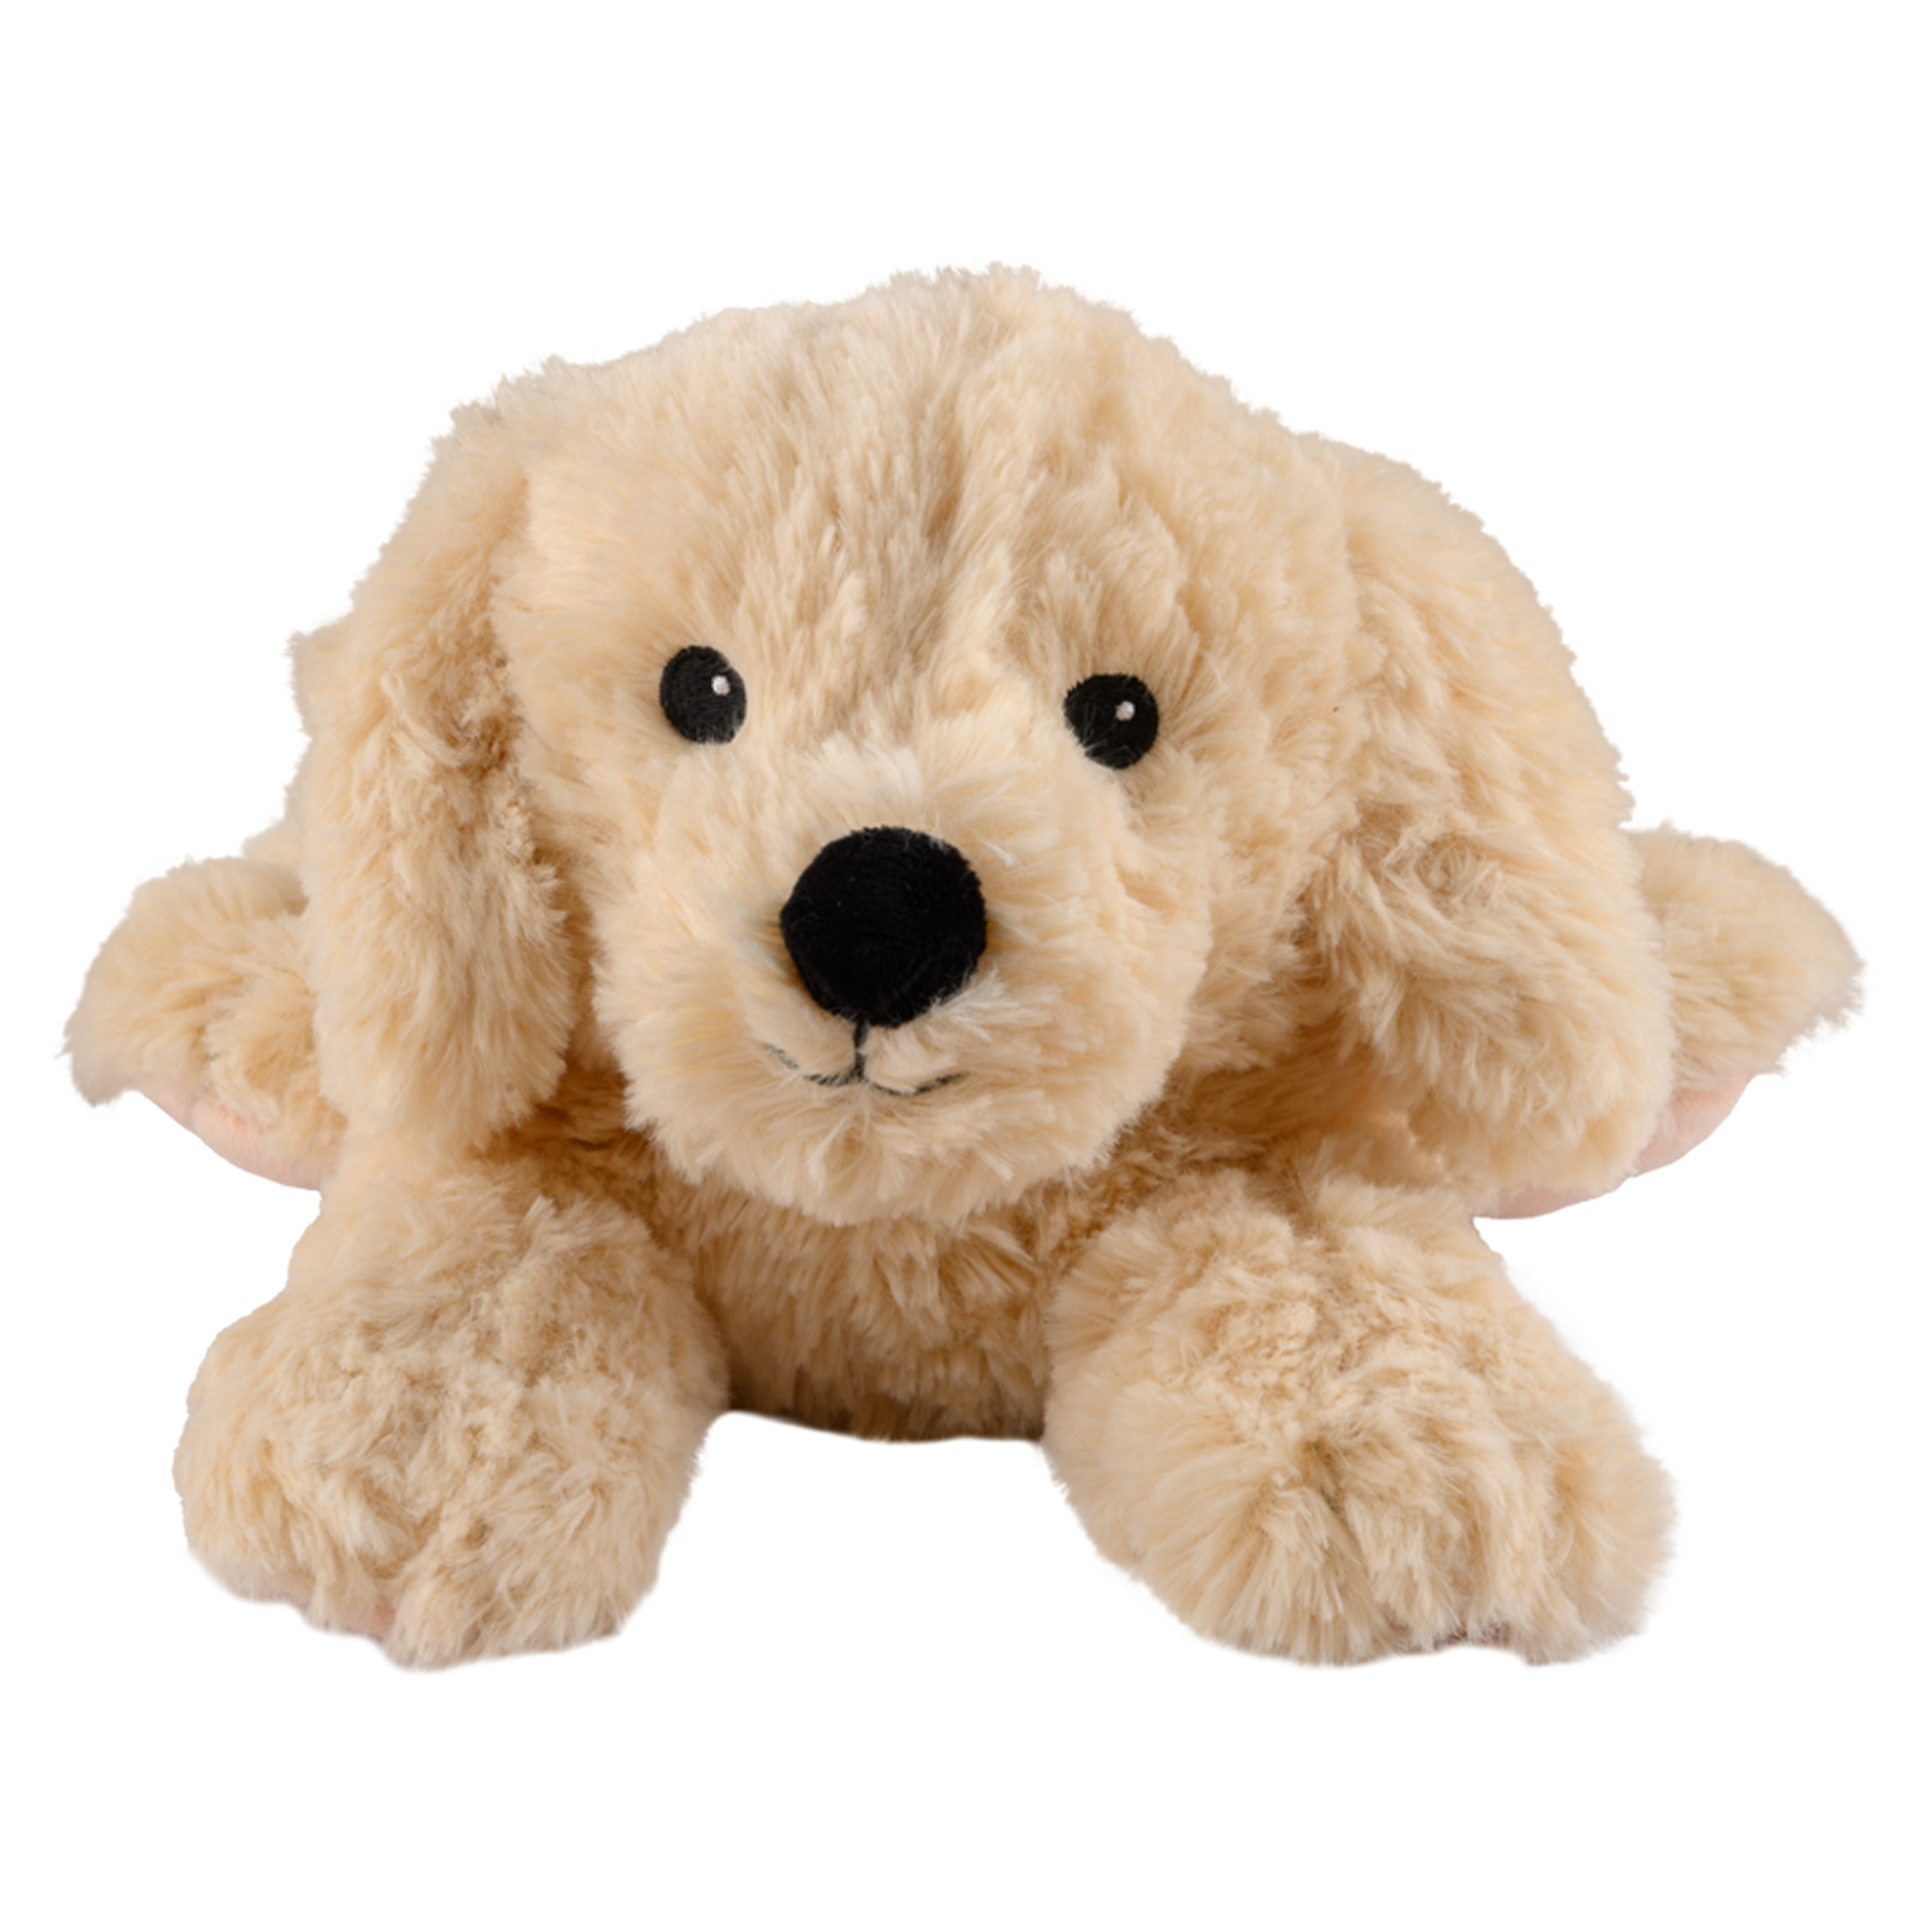 Warmte-magnetron opwarm knuffel Hond-golden retriever bruin 33 cm pittenzak